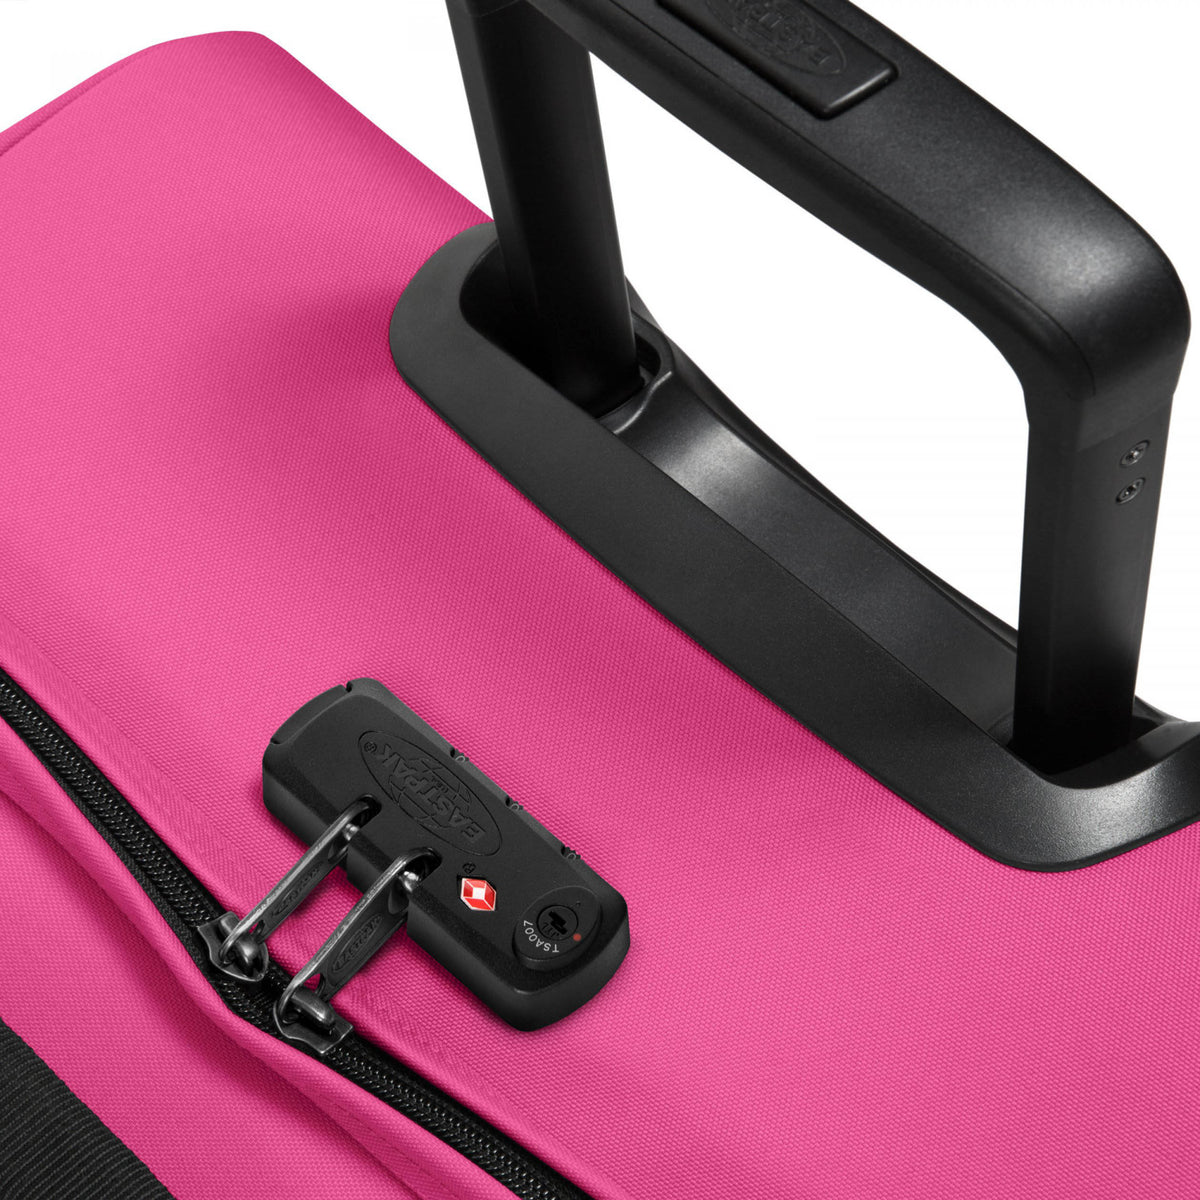 Eastpak Tranverz L Suitcase - Pink Escape